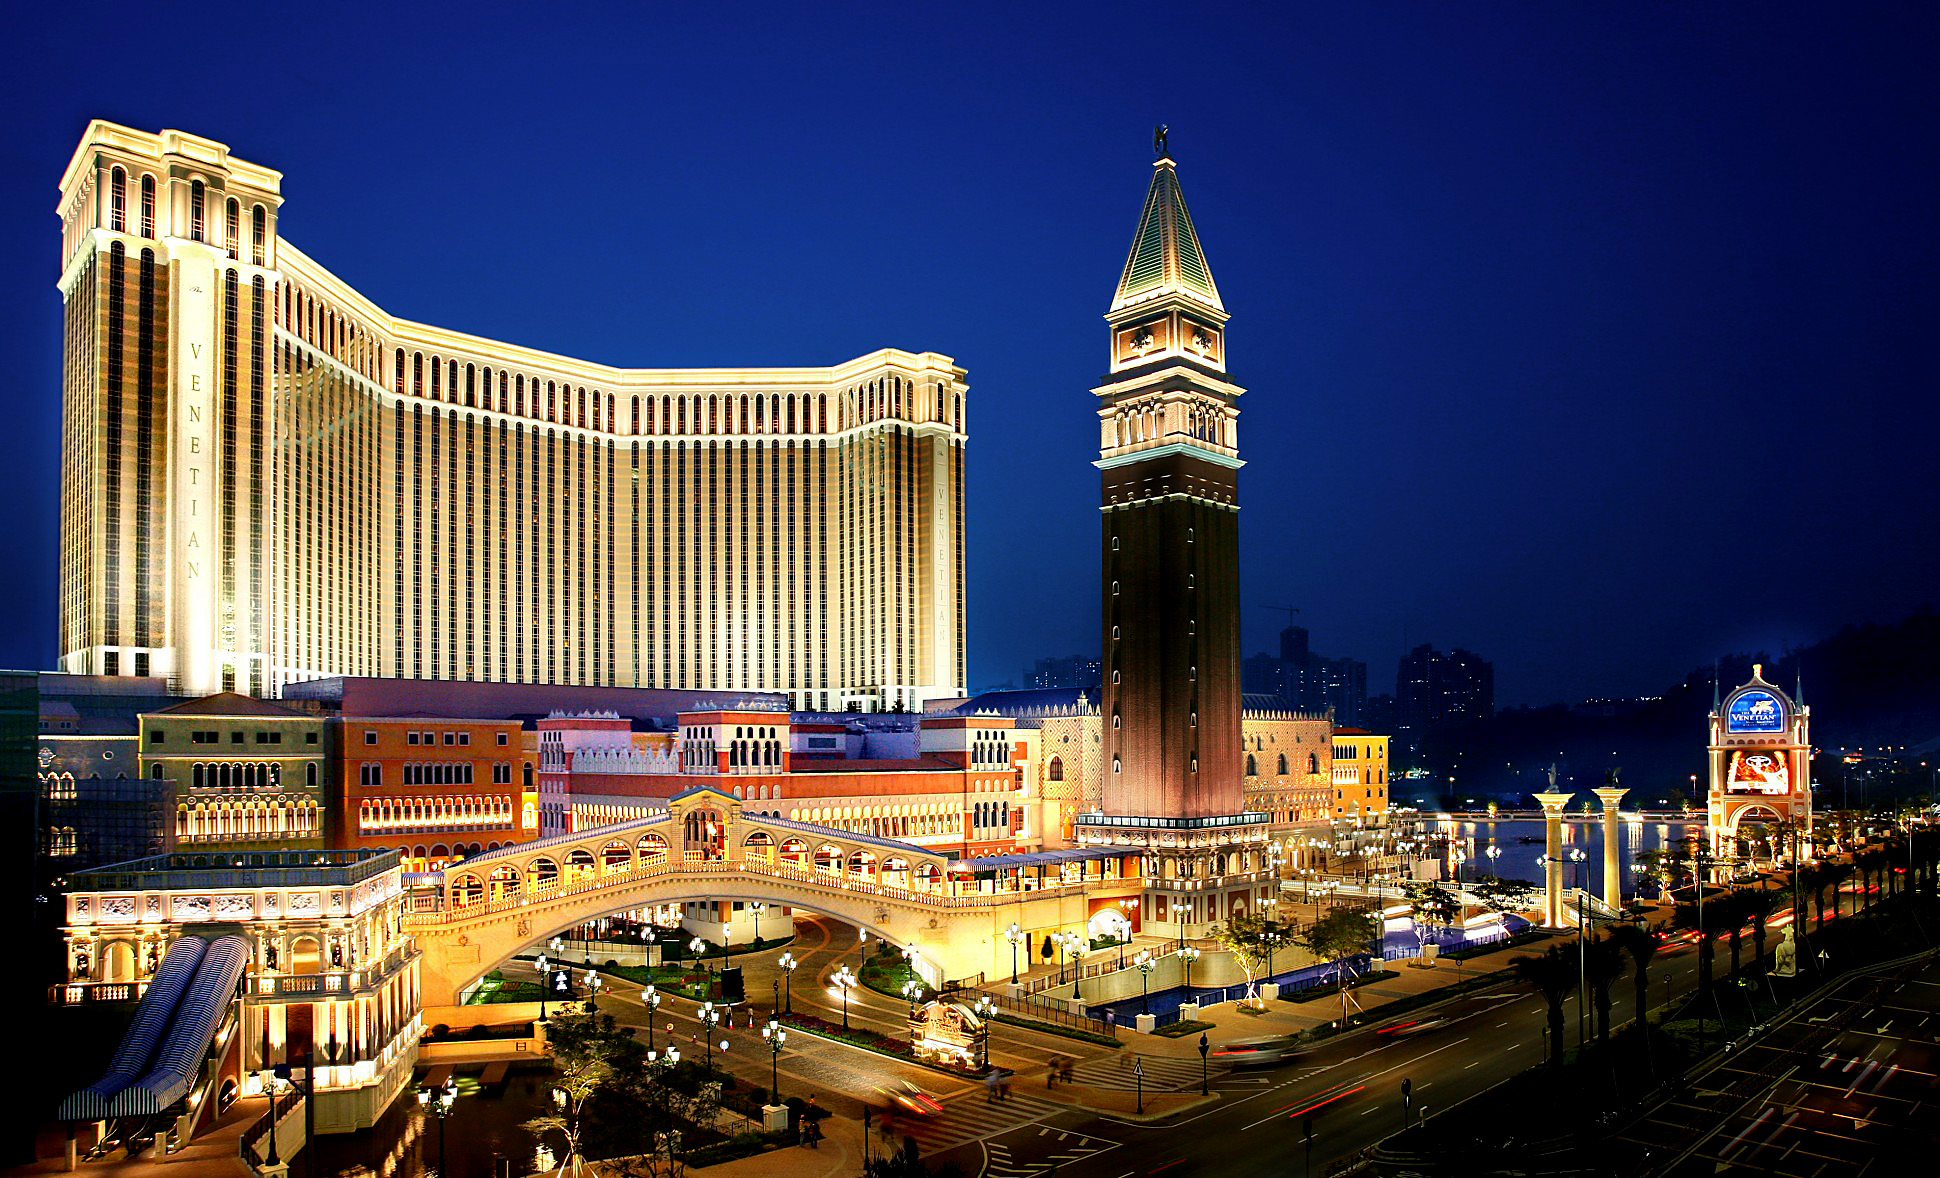 10 Best Casinos in the World